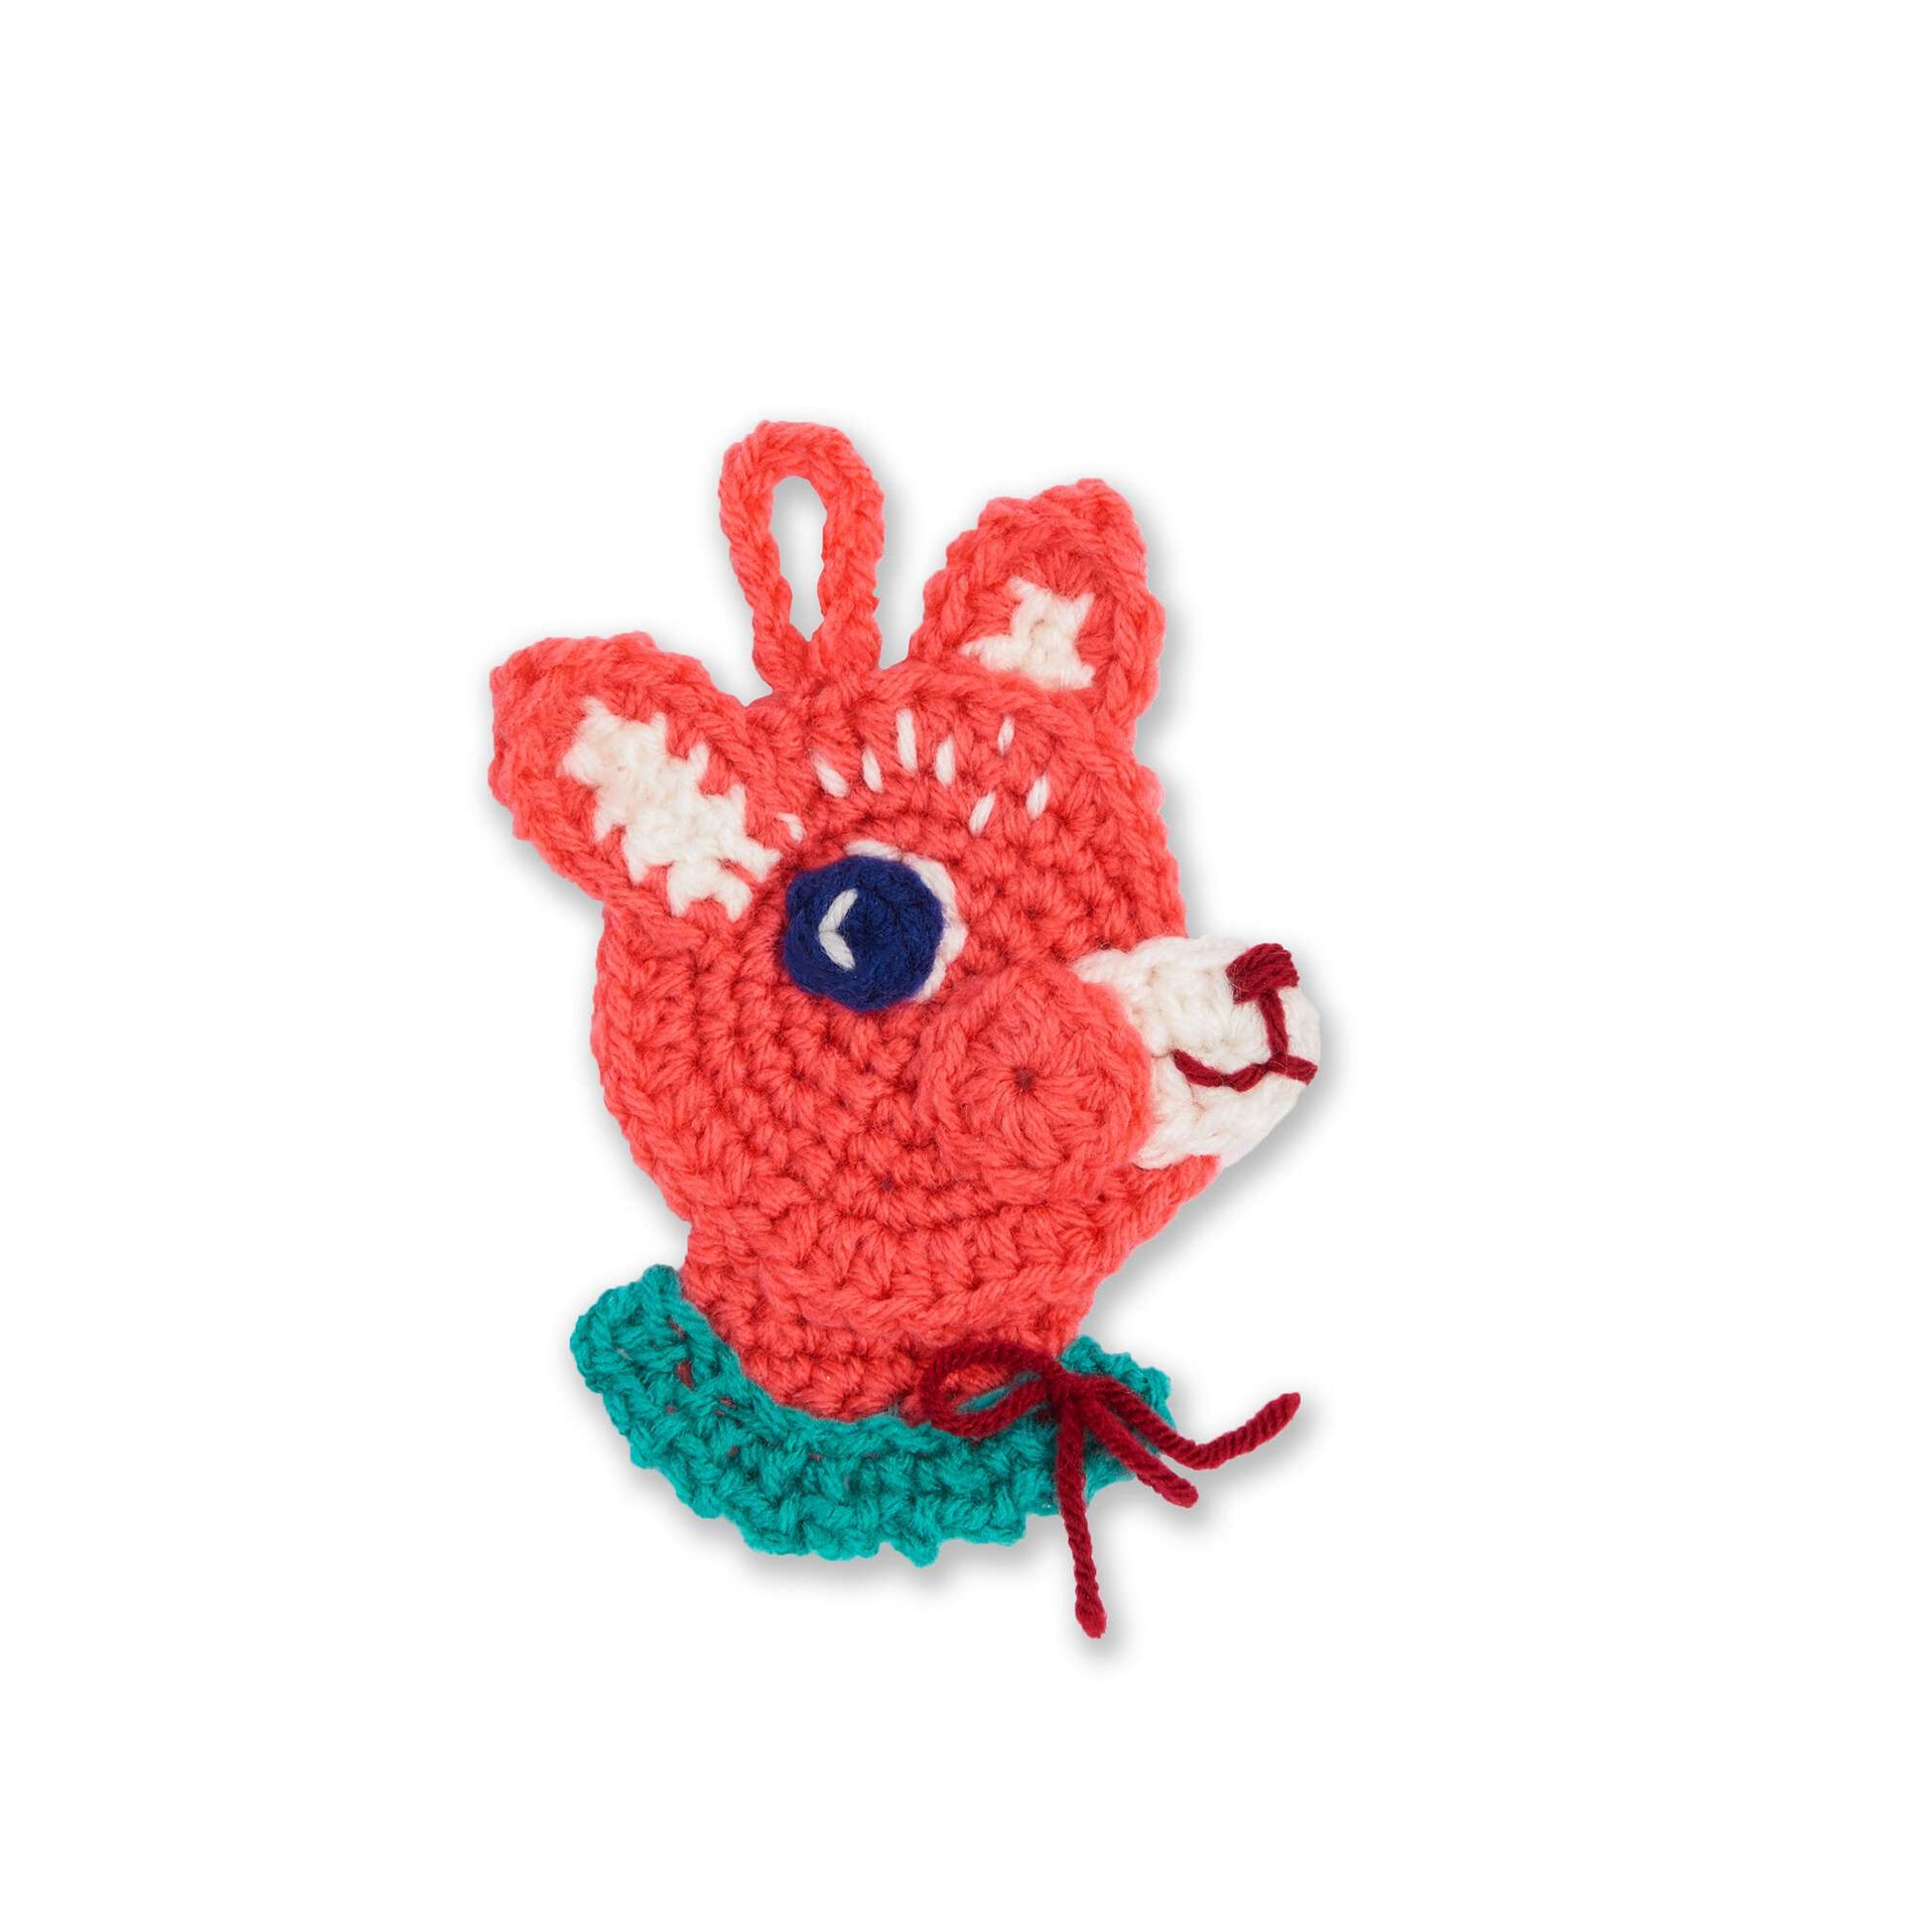 Free Red Heart Hello Deer Crochet Ornament Pattern